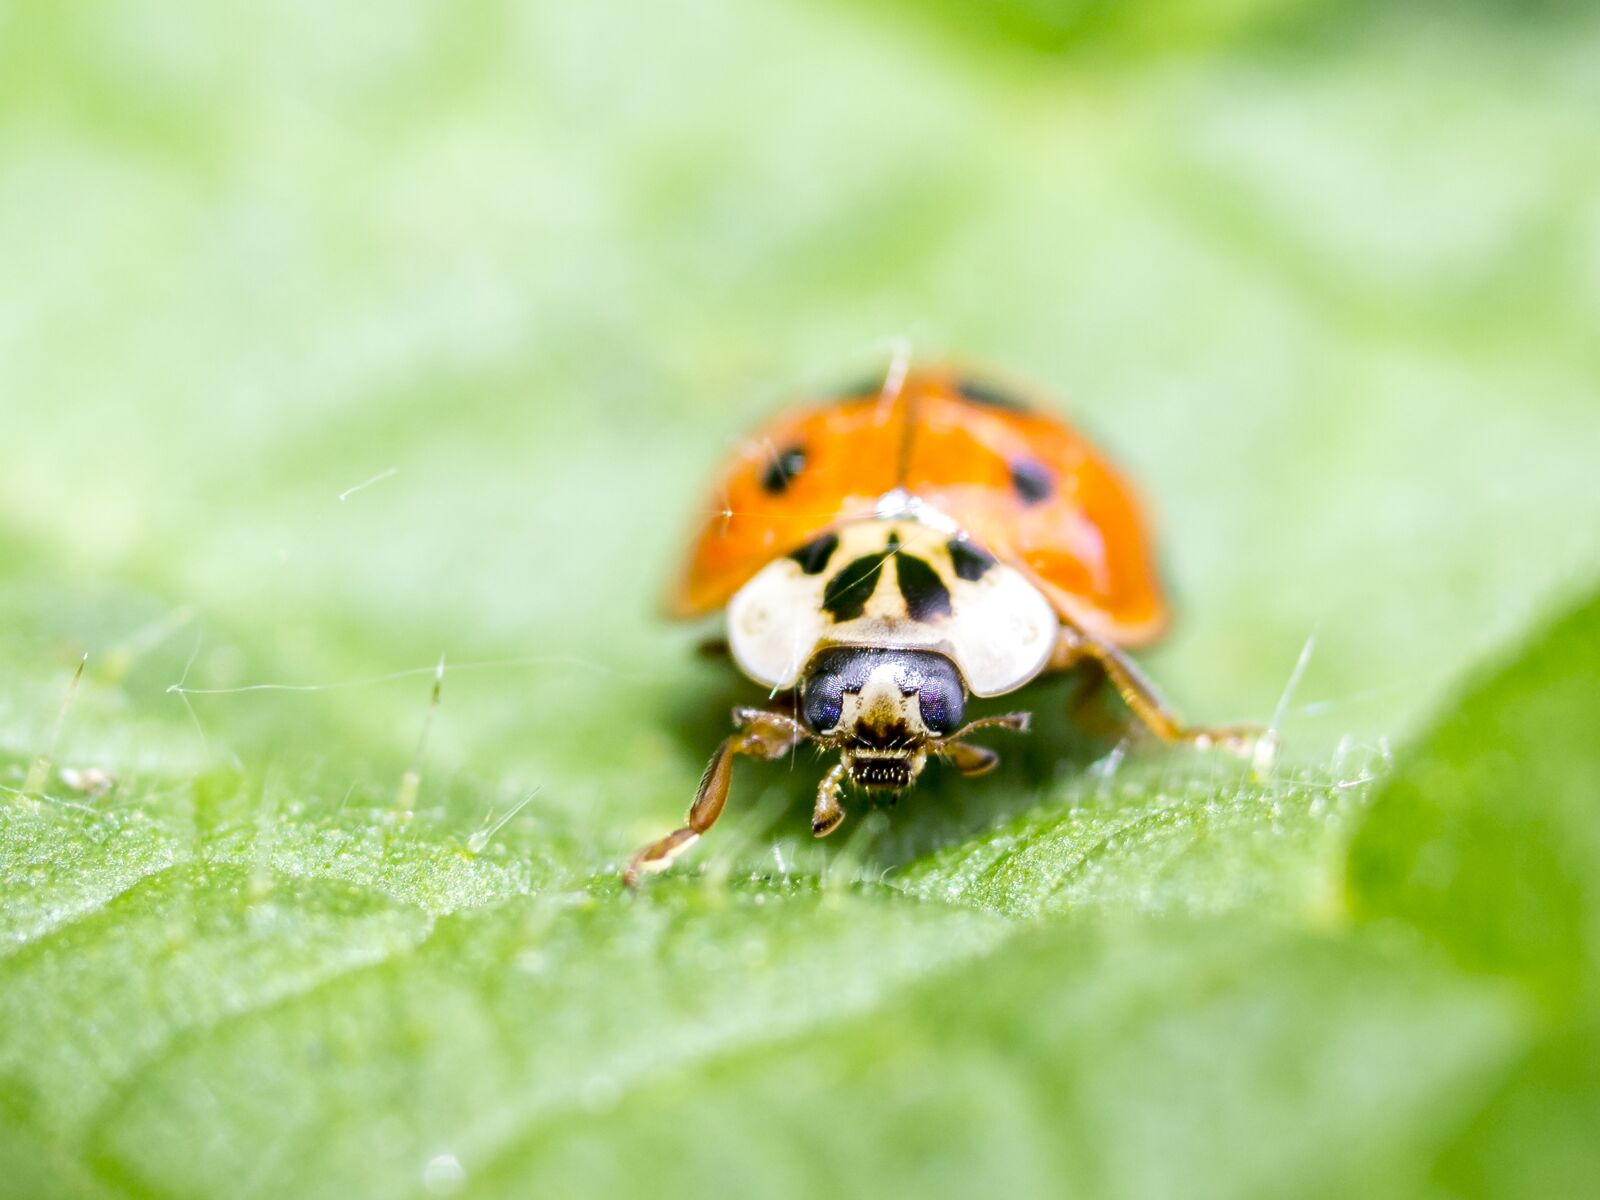 Olympus E-5 sample photo. Ladybug, beetle, insect photography